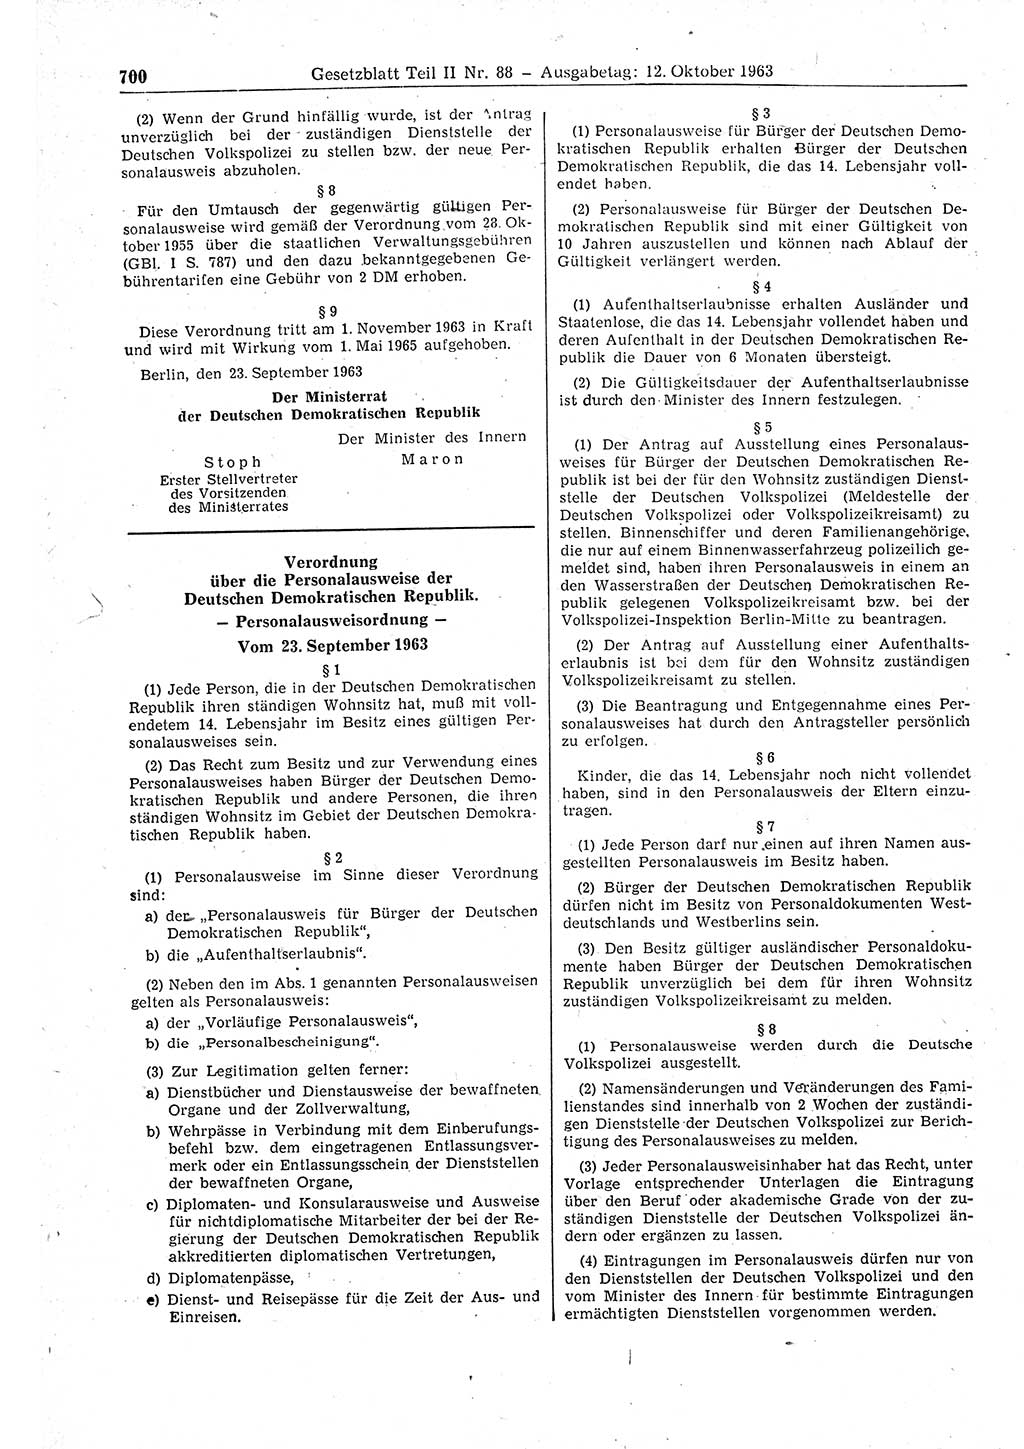 Gesetzblatt (GBl.) der Deutschen Demokratischen Republik (DDR) Teil ⅠⅠ 1963, Seite 700 (GBl. DDR ⅠⅠ 1963, S. 700)